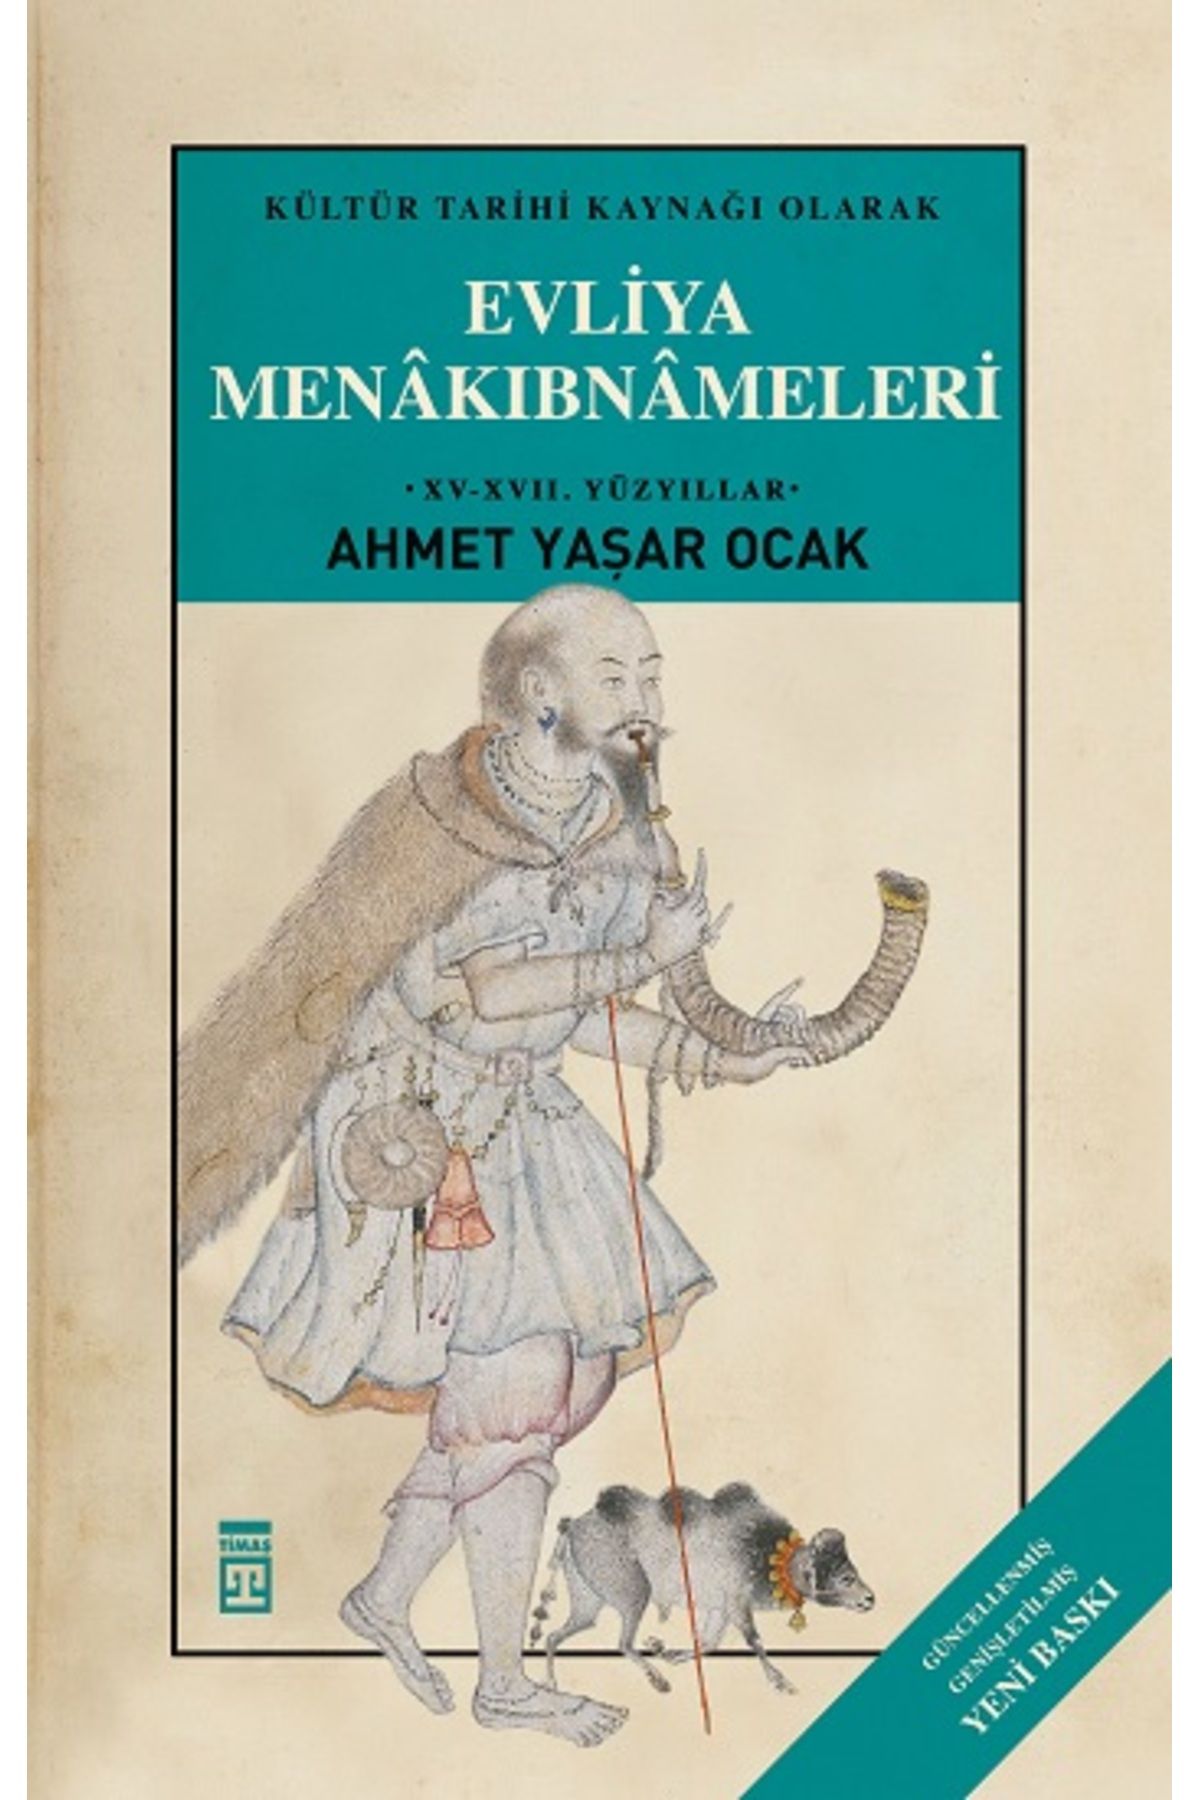 Timaş Yayınları Evliya Menakıbnameleri (Ciltli) kitabı - Ahmet Yaşar Ocak - Timaş Yayınları